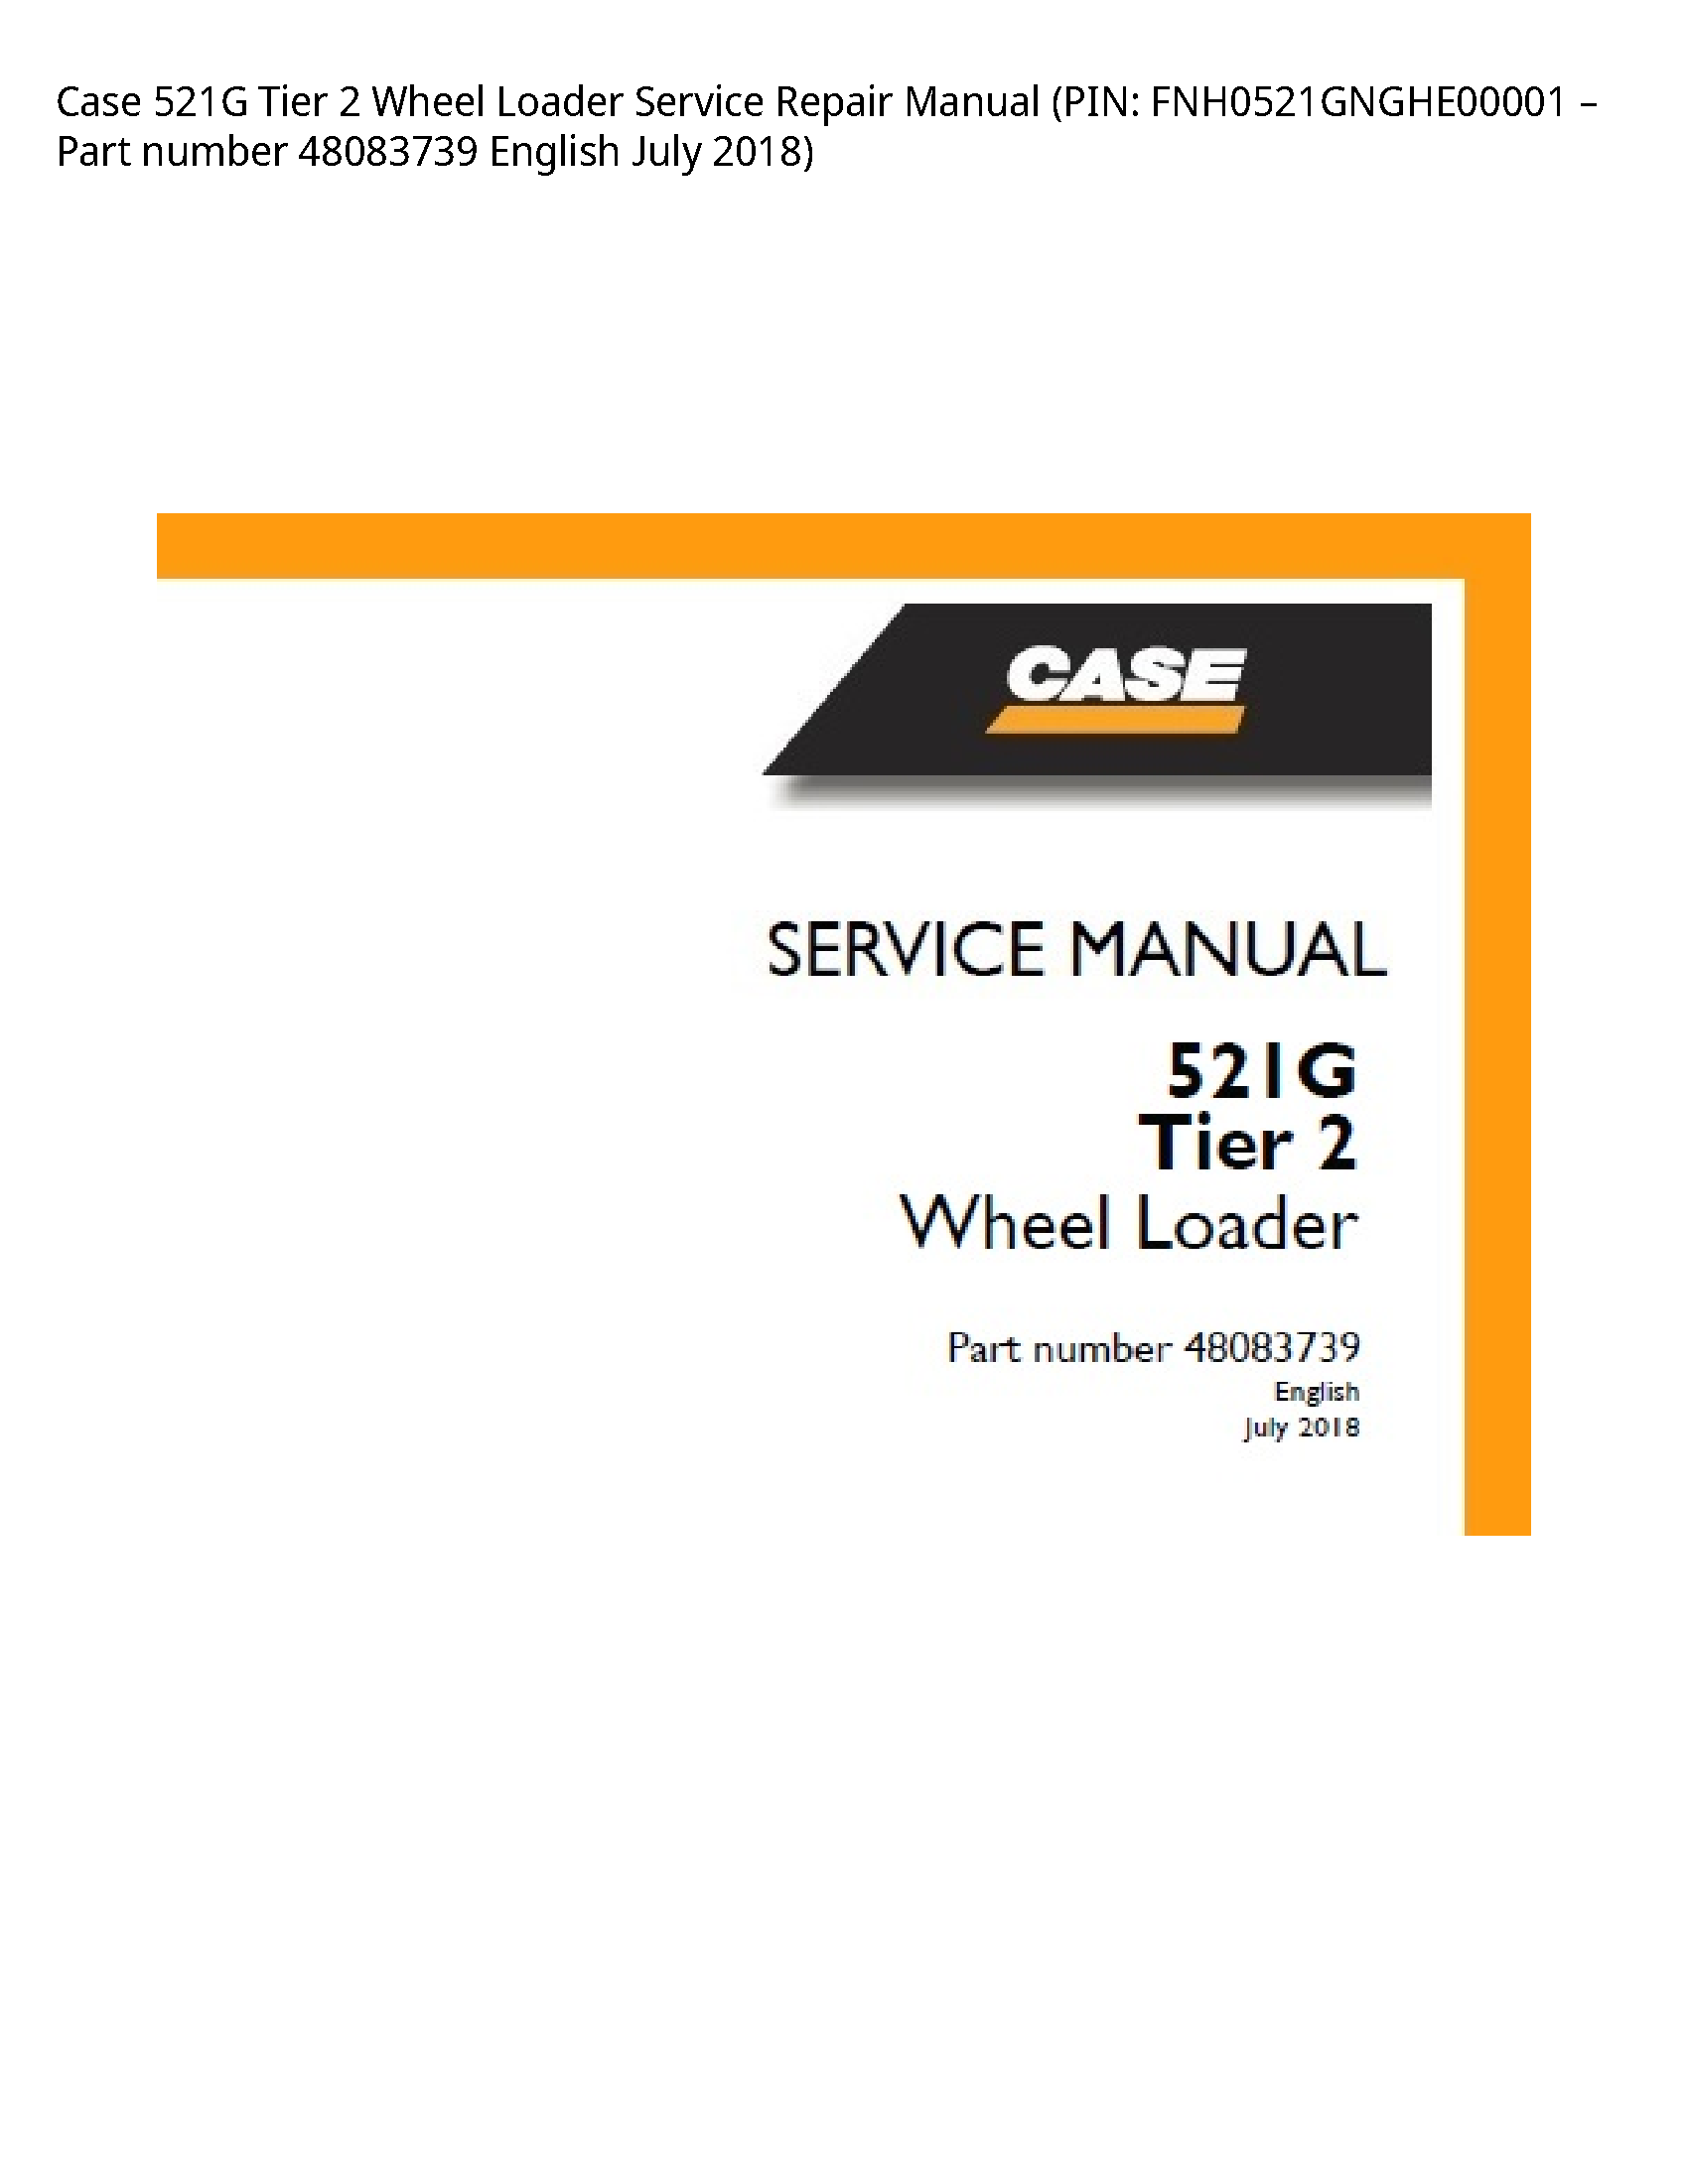 Case/Case IH 521G Tier Wheel Loader manual